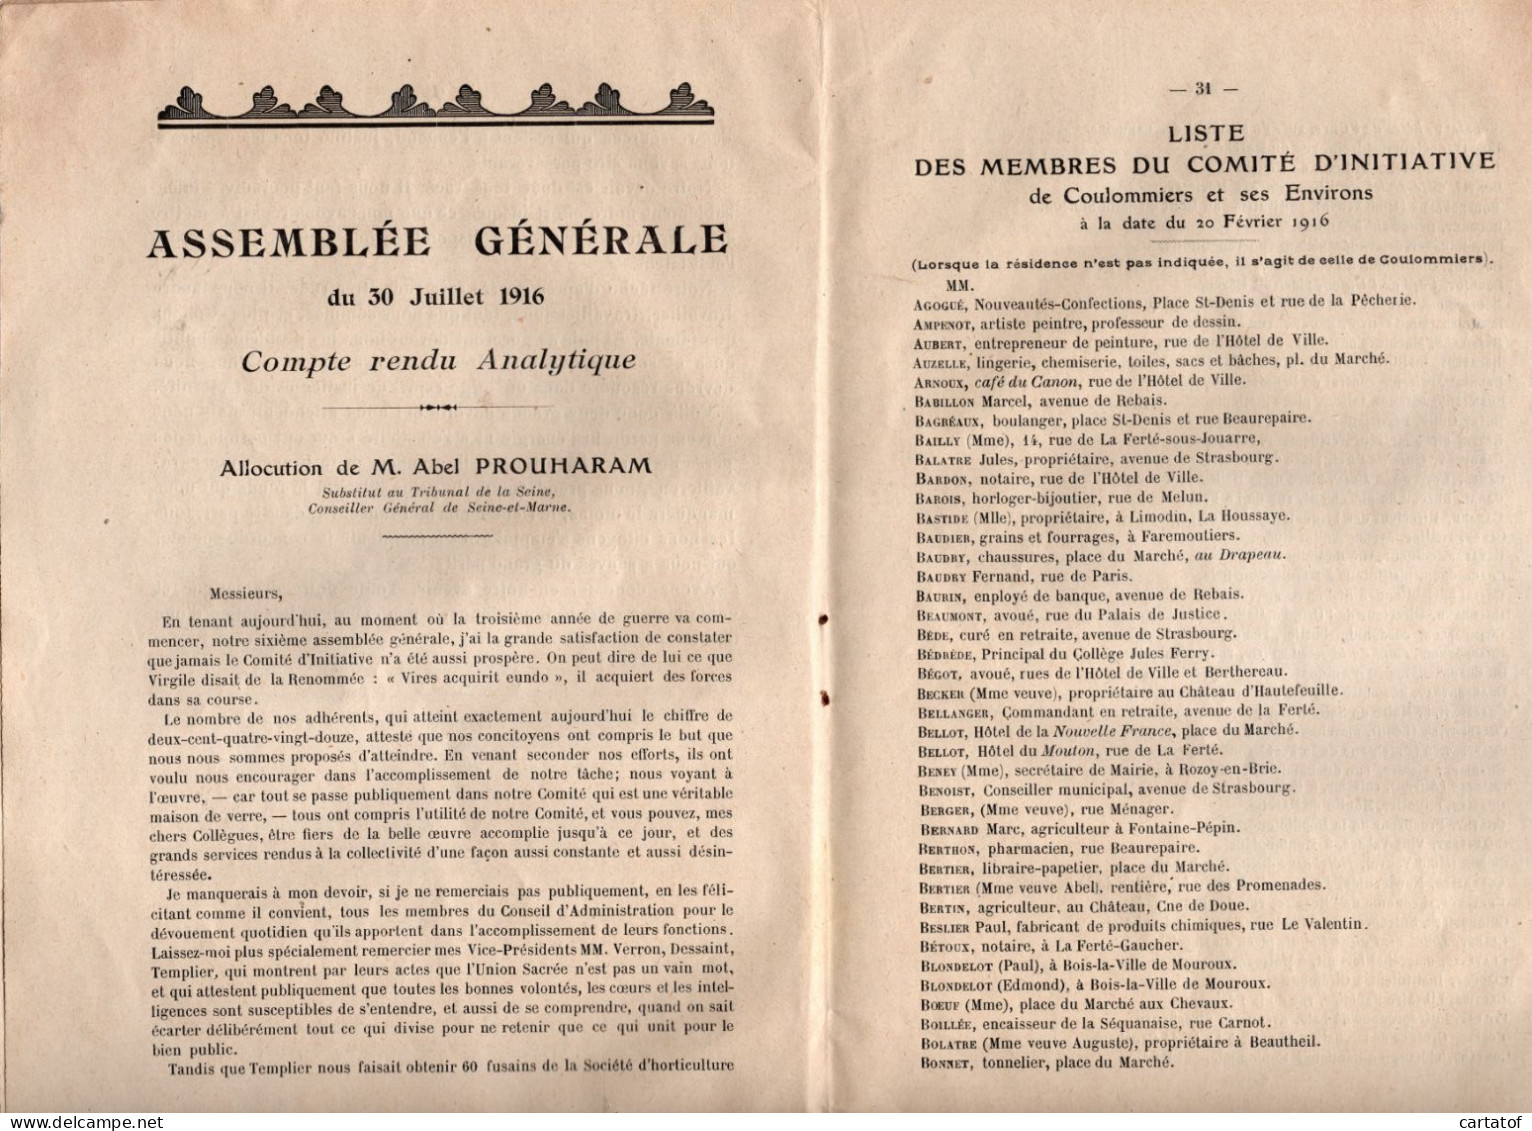 Comité D'Initiative De COULOMMIERS Et Ses Environs . Bulletin Trimestriel Octobre 1916 N°4 . - Non Classificati